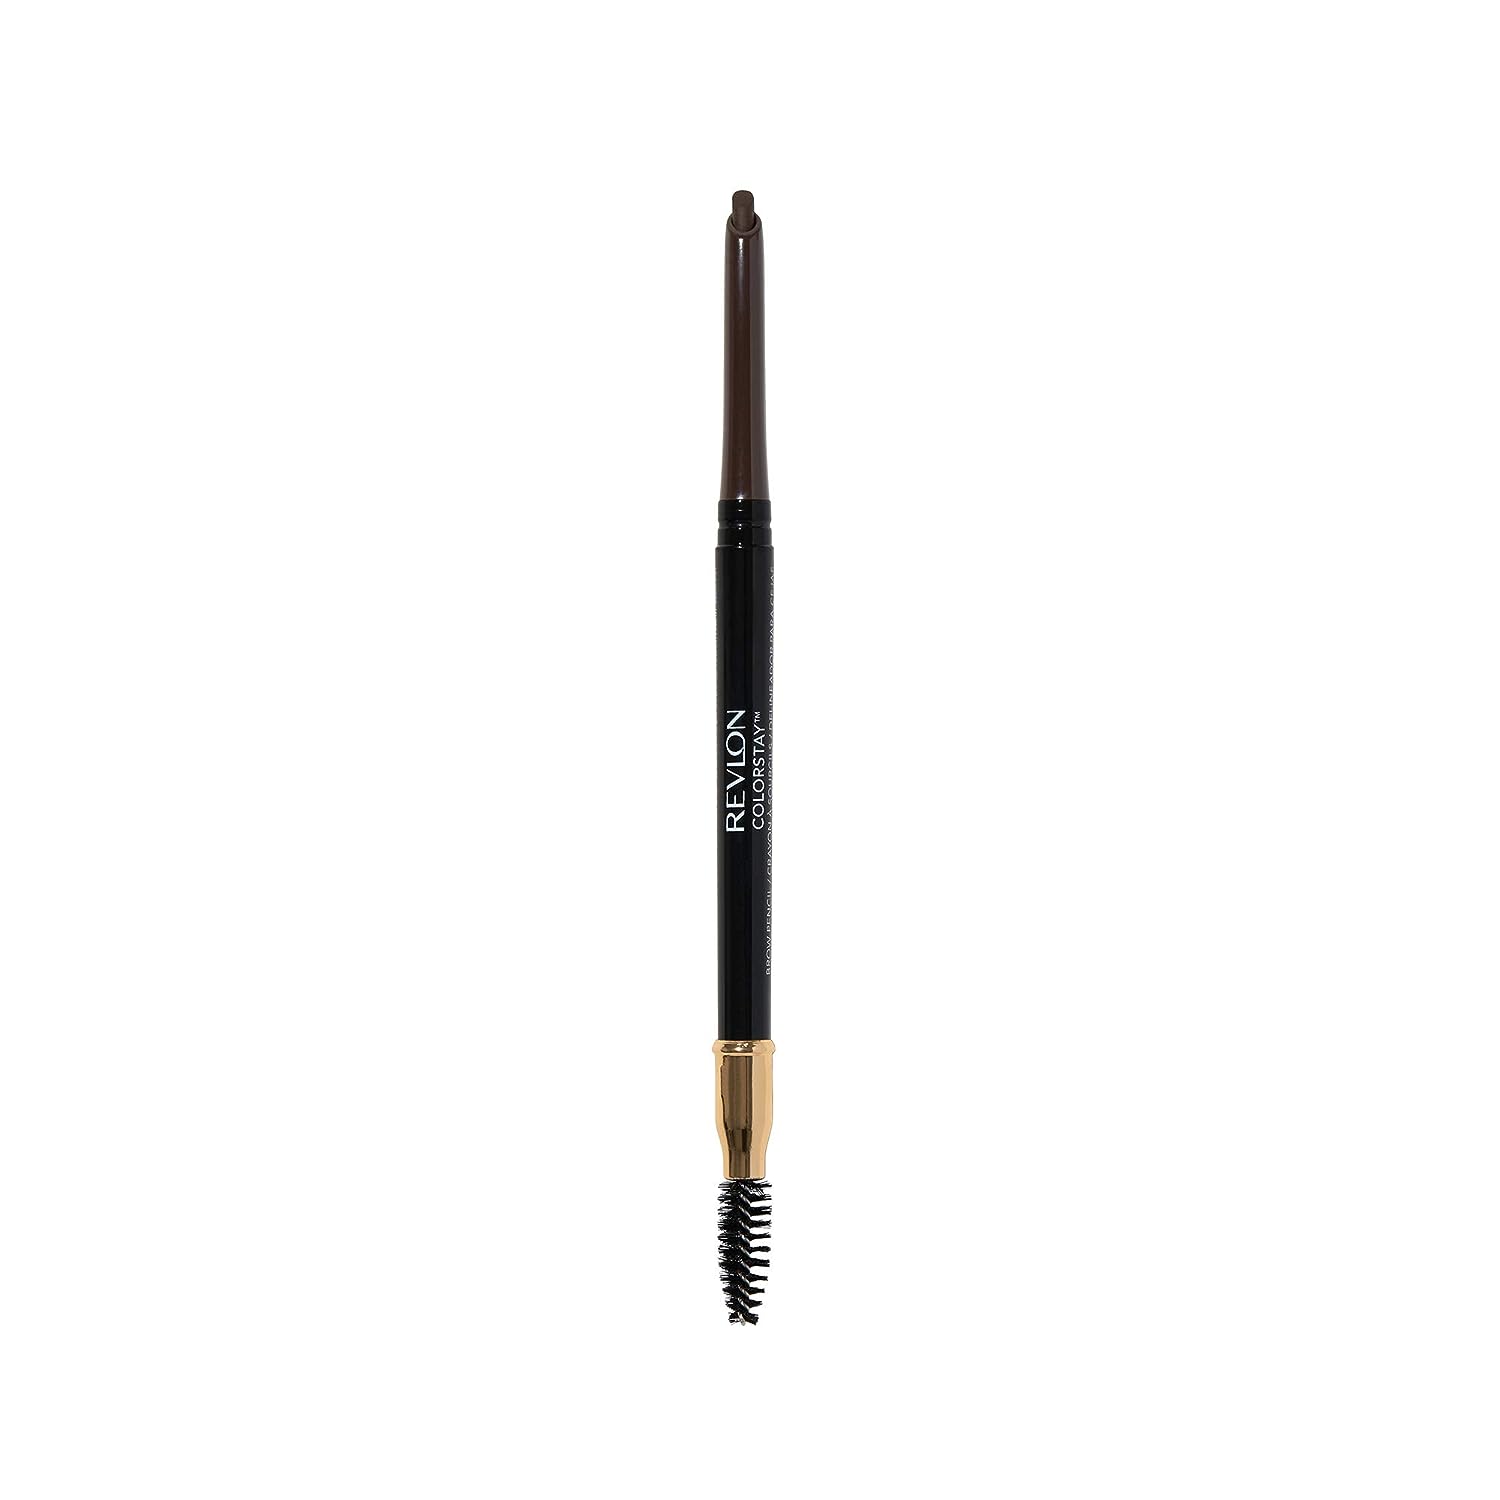 Revlon Eyebrow Pencil, Colorstay Eye Makeup with Eyebrow Spoolie, Waterproof, Longwearing Angled Precision Tip, 220 Dark Brown, 0.01